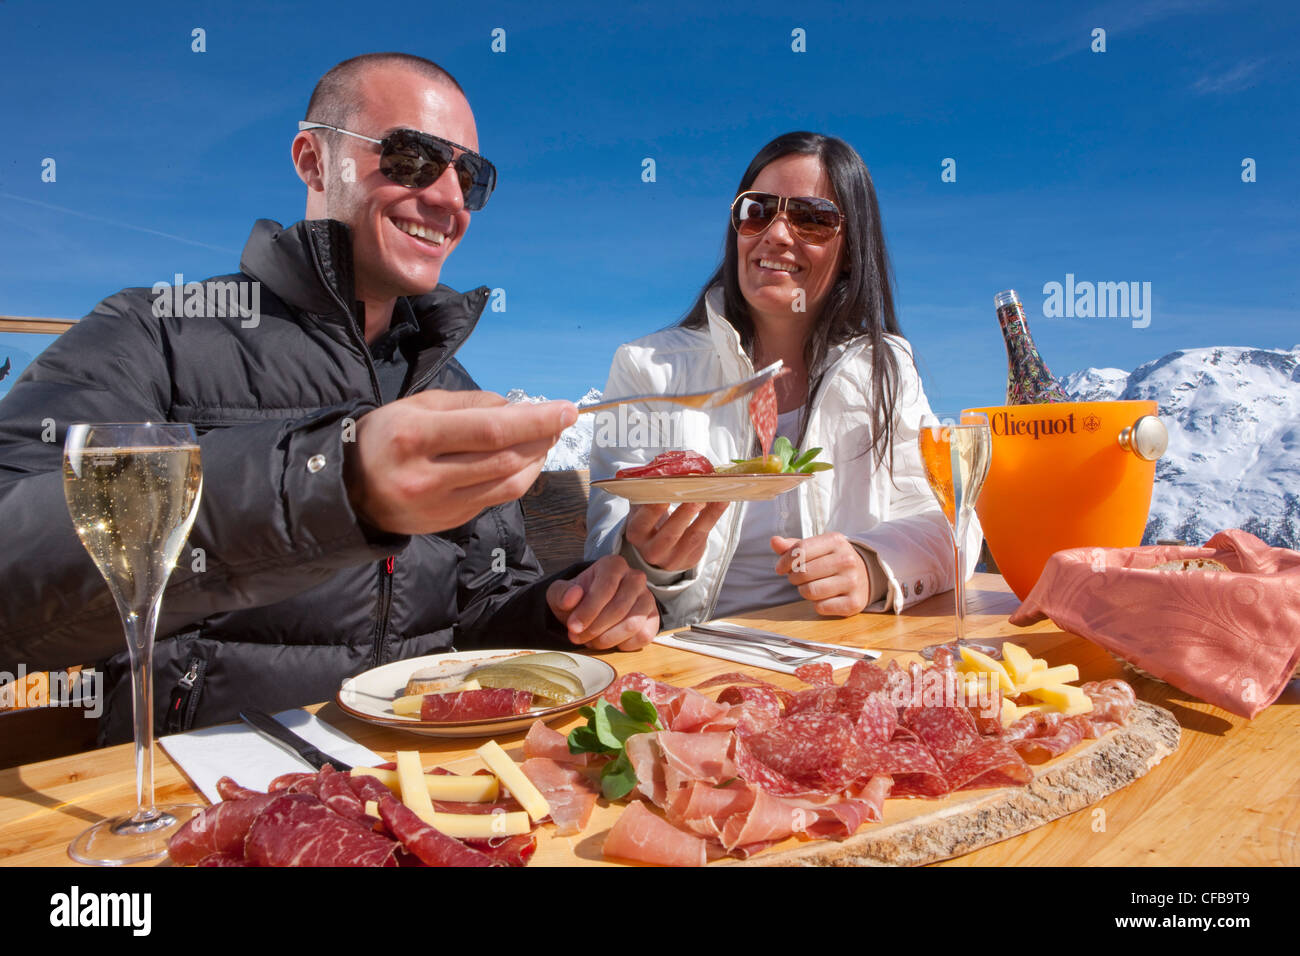 Turismo, vacanze, del cantone dei Grigioni, Grigioni, Svizzera, Europa, giovane, cibo, mangiare, catering, commercio, ristorante, hotel, d Foto Stock